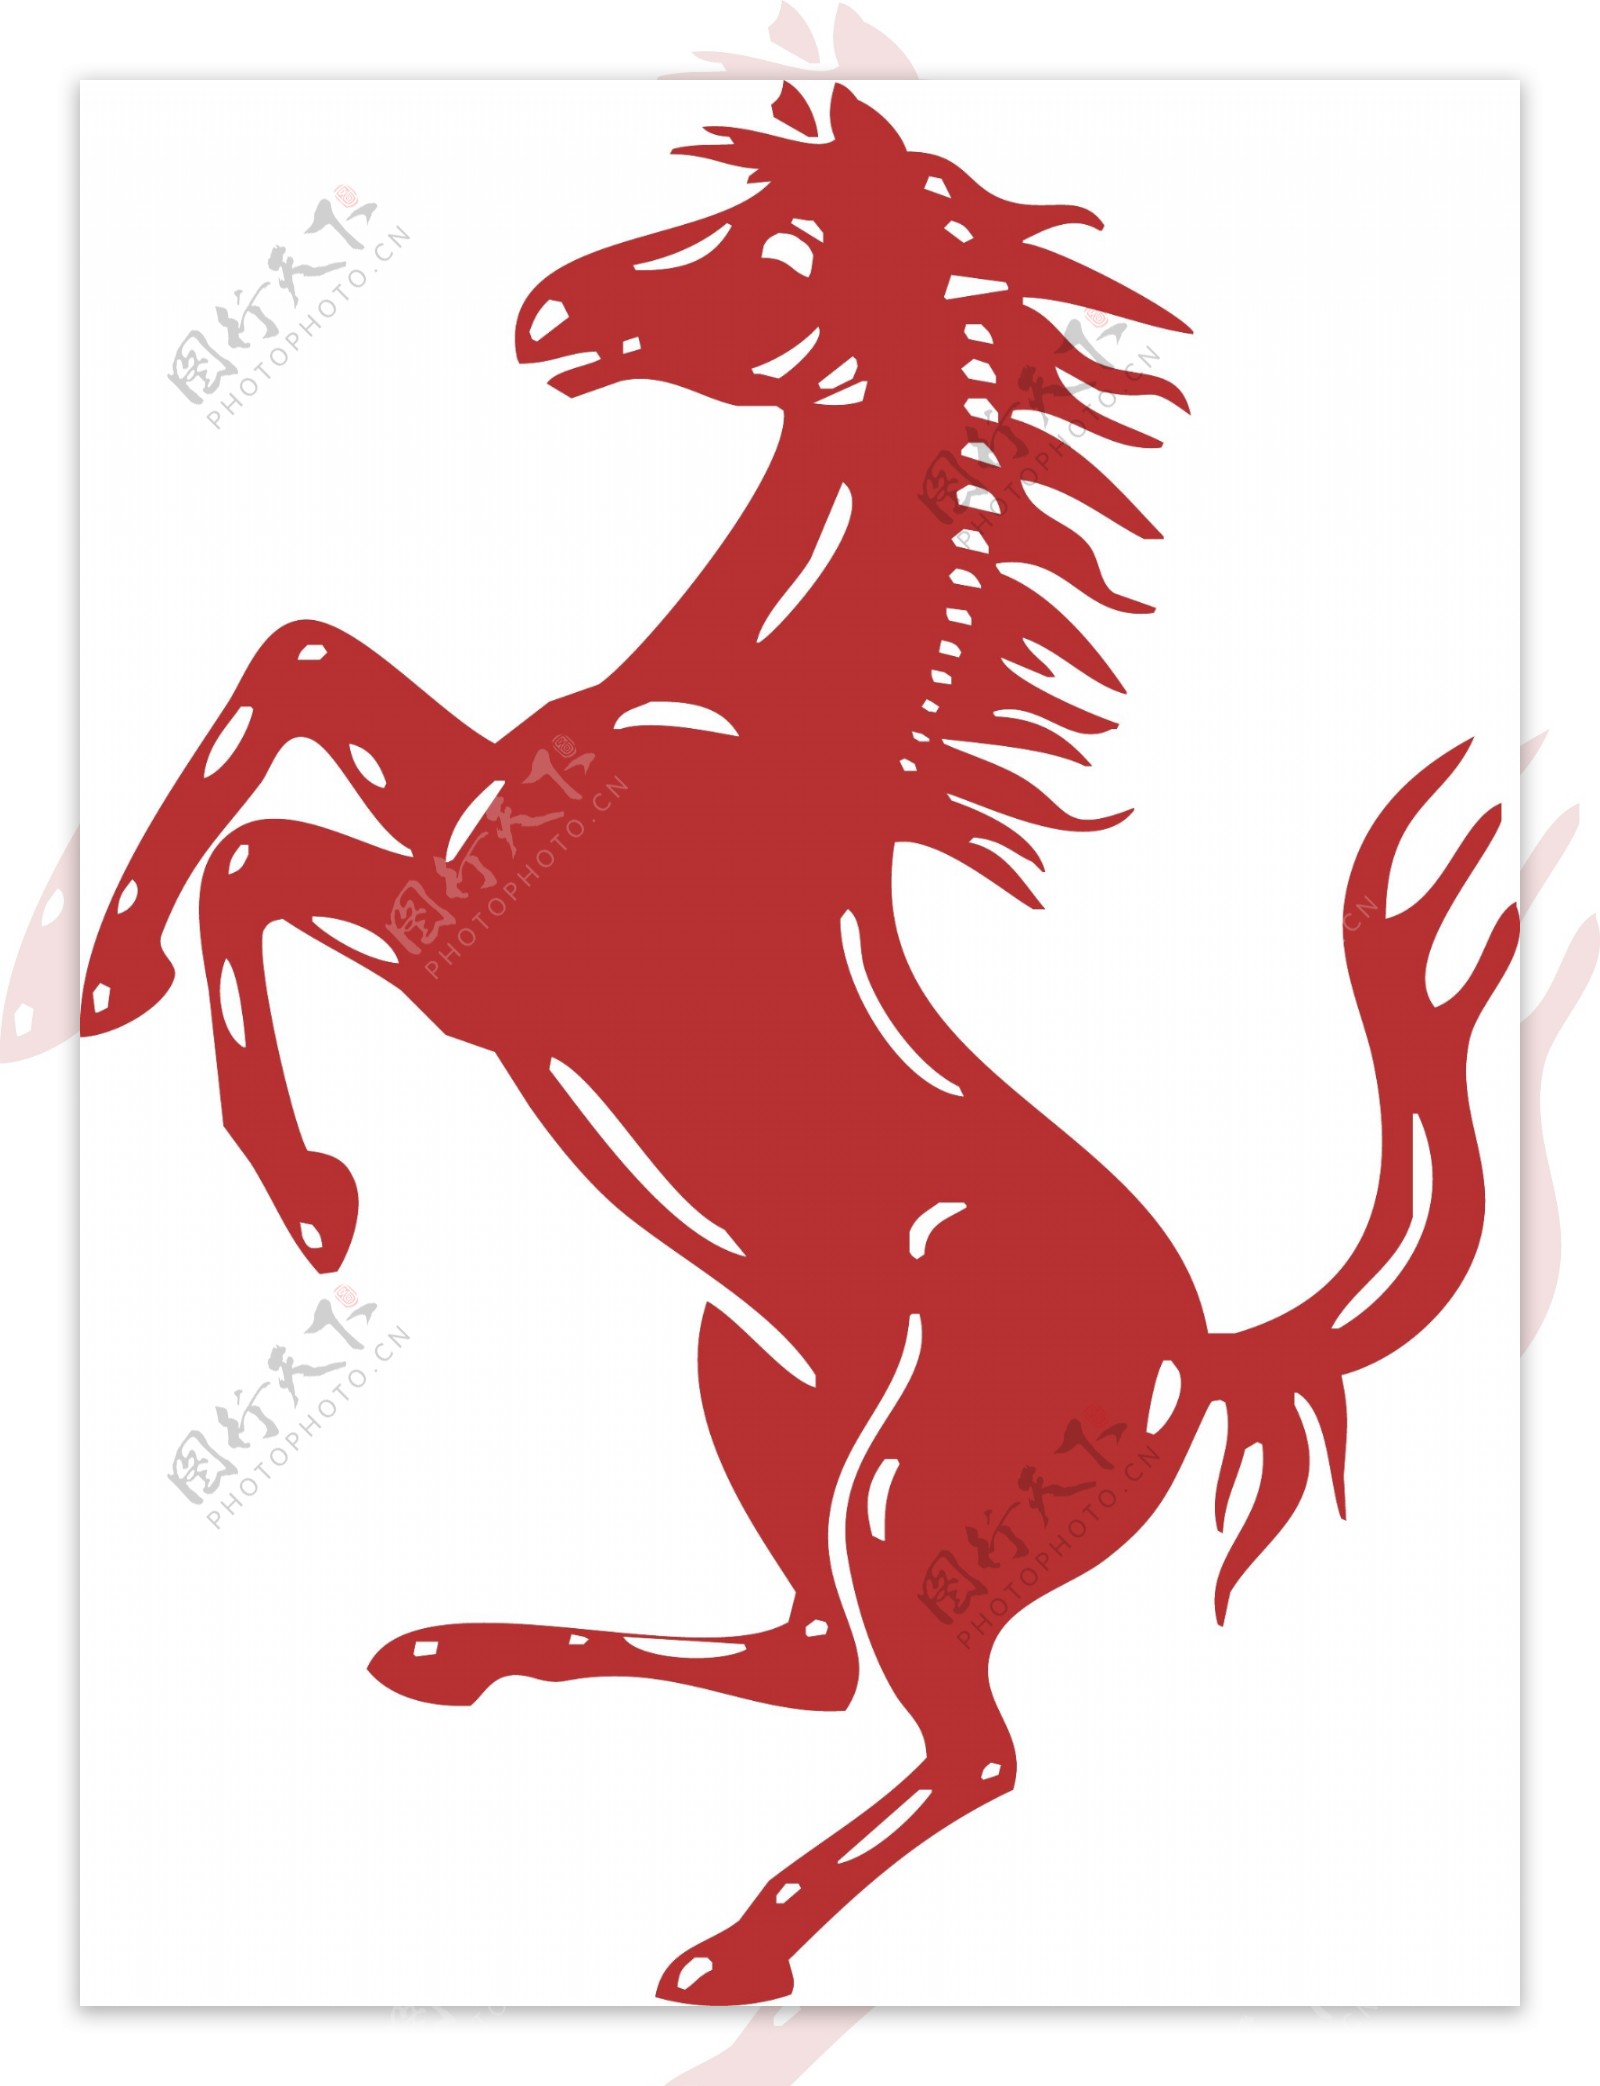 Ferrari Logo Wallpapers - WallpaperSafari